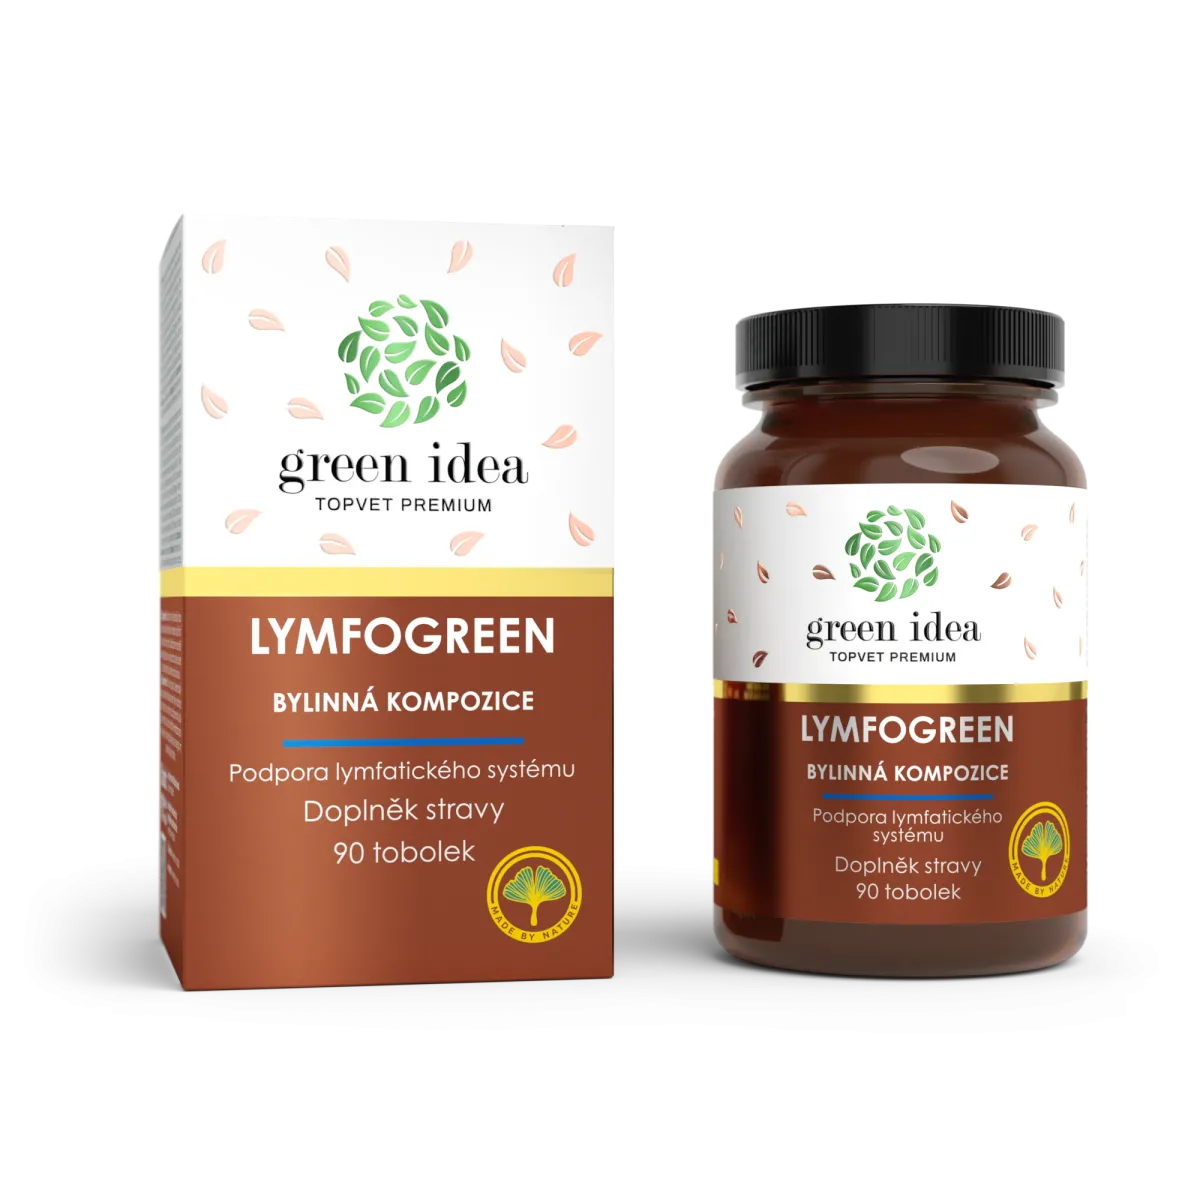 LYMFOGREEN Gyógynövények segítségével - 13 gyógynövény + B vitamin komplex- mely hatékonyan támogatja a nyirokrendszer egészséges működését